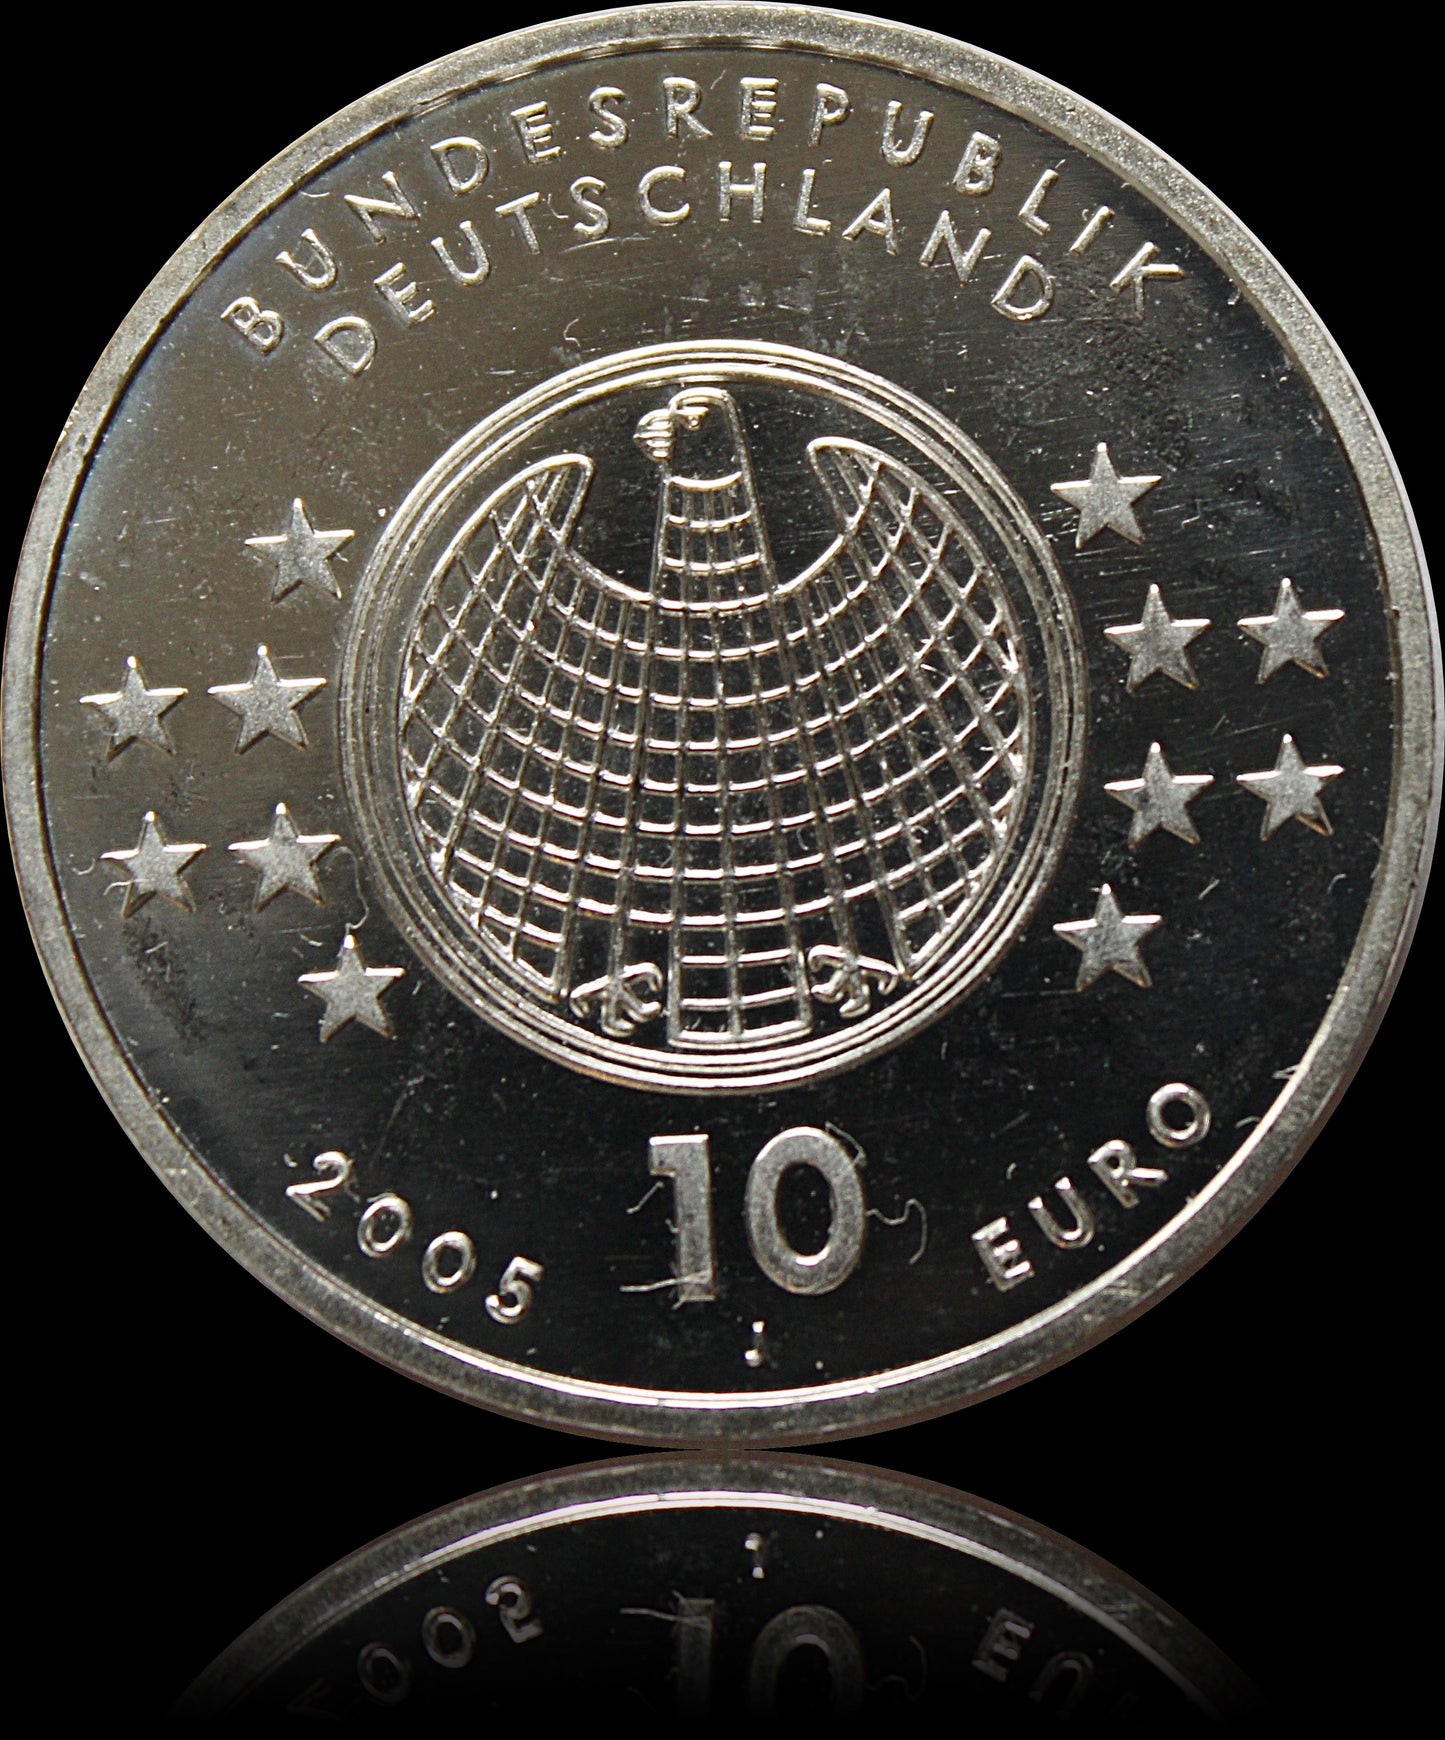 ALBERT EINSTEIN, Serie 10 € Silber Gedenkmünzen Deutschland, Stempelglanz, 2005